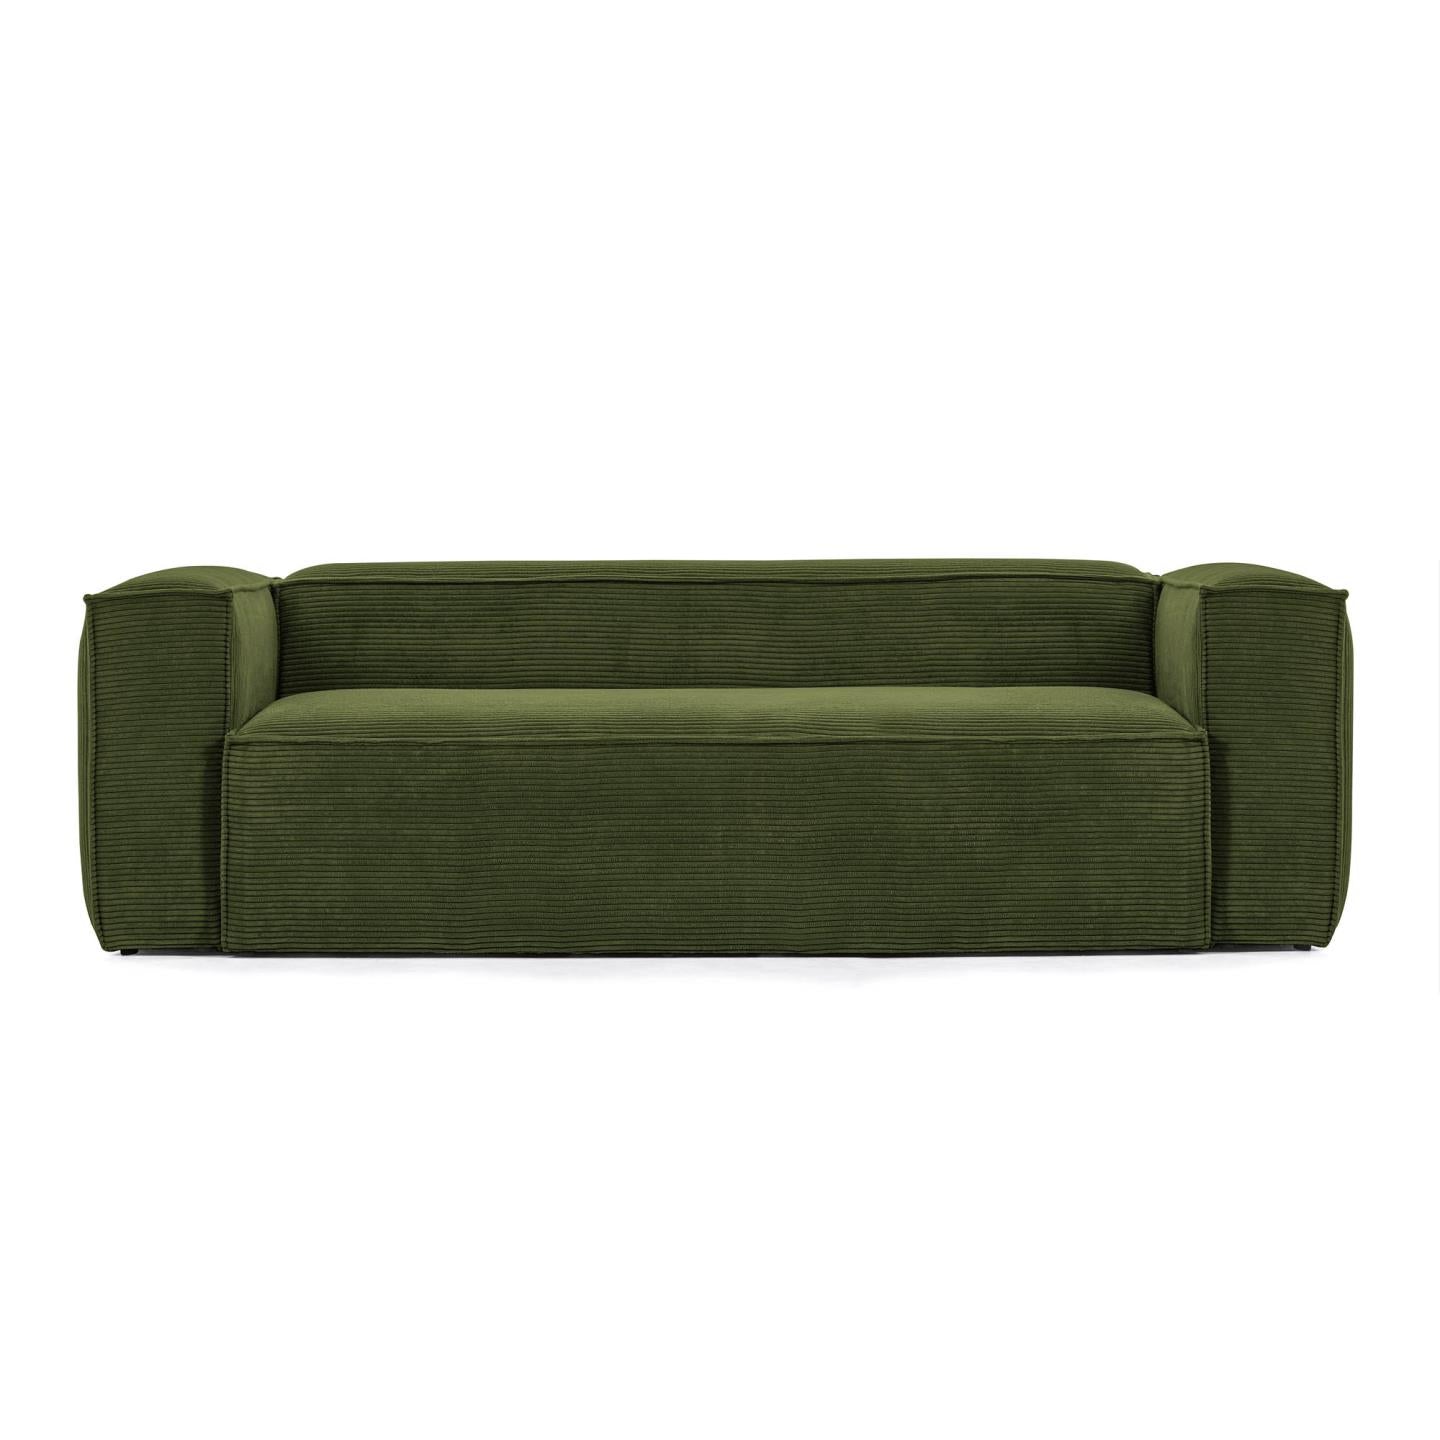 Blok 3 személyes kanapé, zöld, széles varrású kordbársony, 240 cm